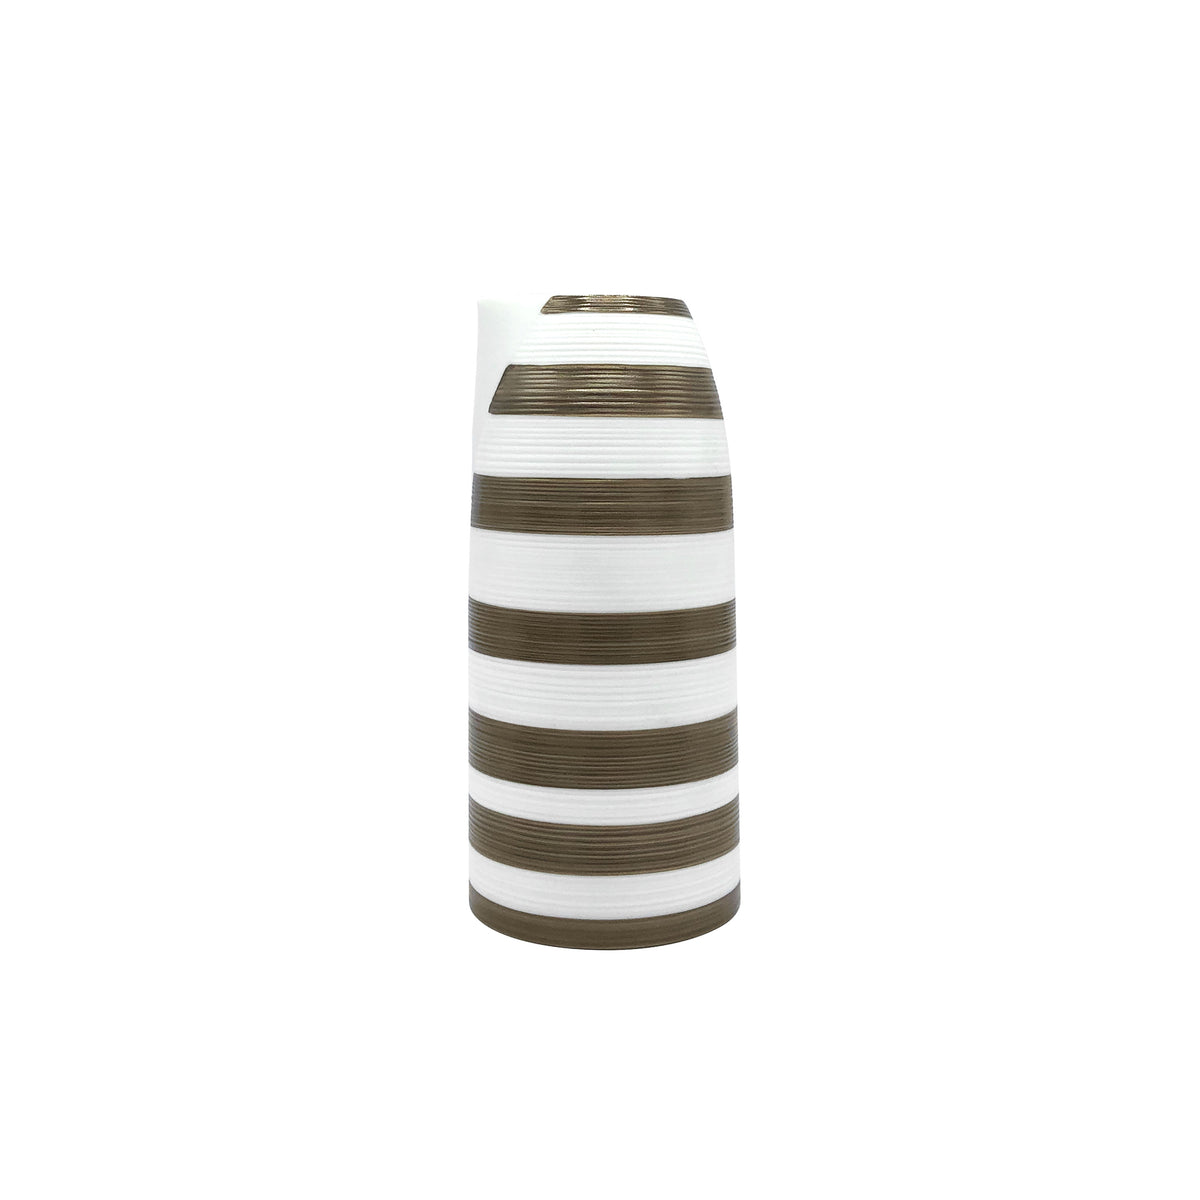 HEMISPHERE Striped Metallic Grey - Sake jug, large